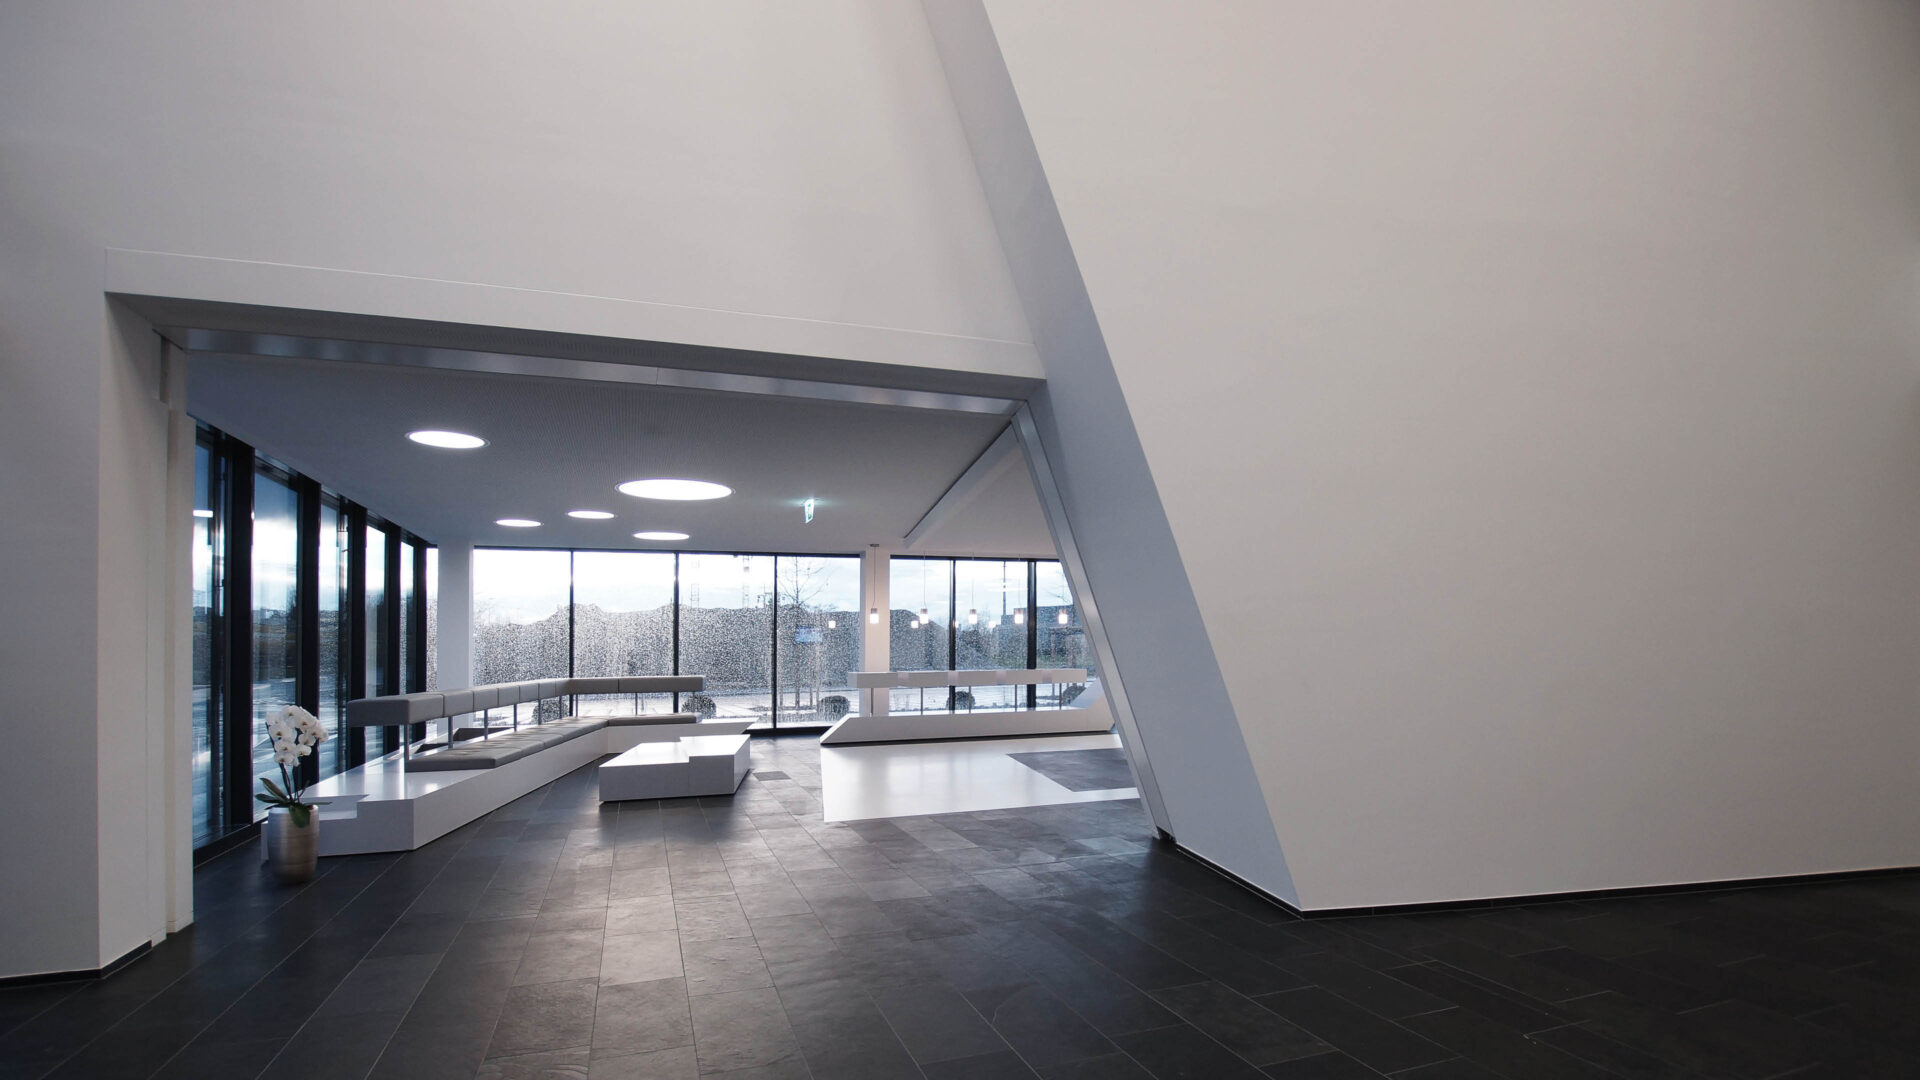 Architecture office, interior design - Daniel Huber architecture & design - Serto